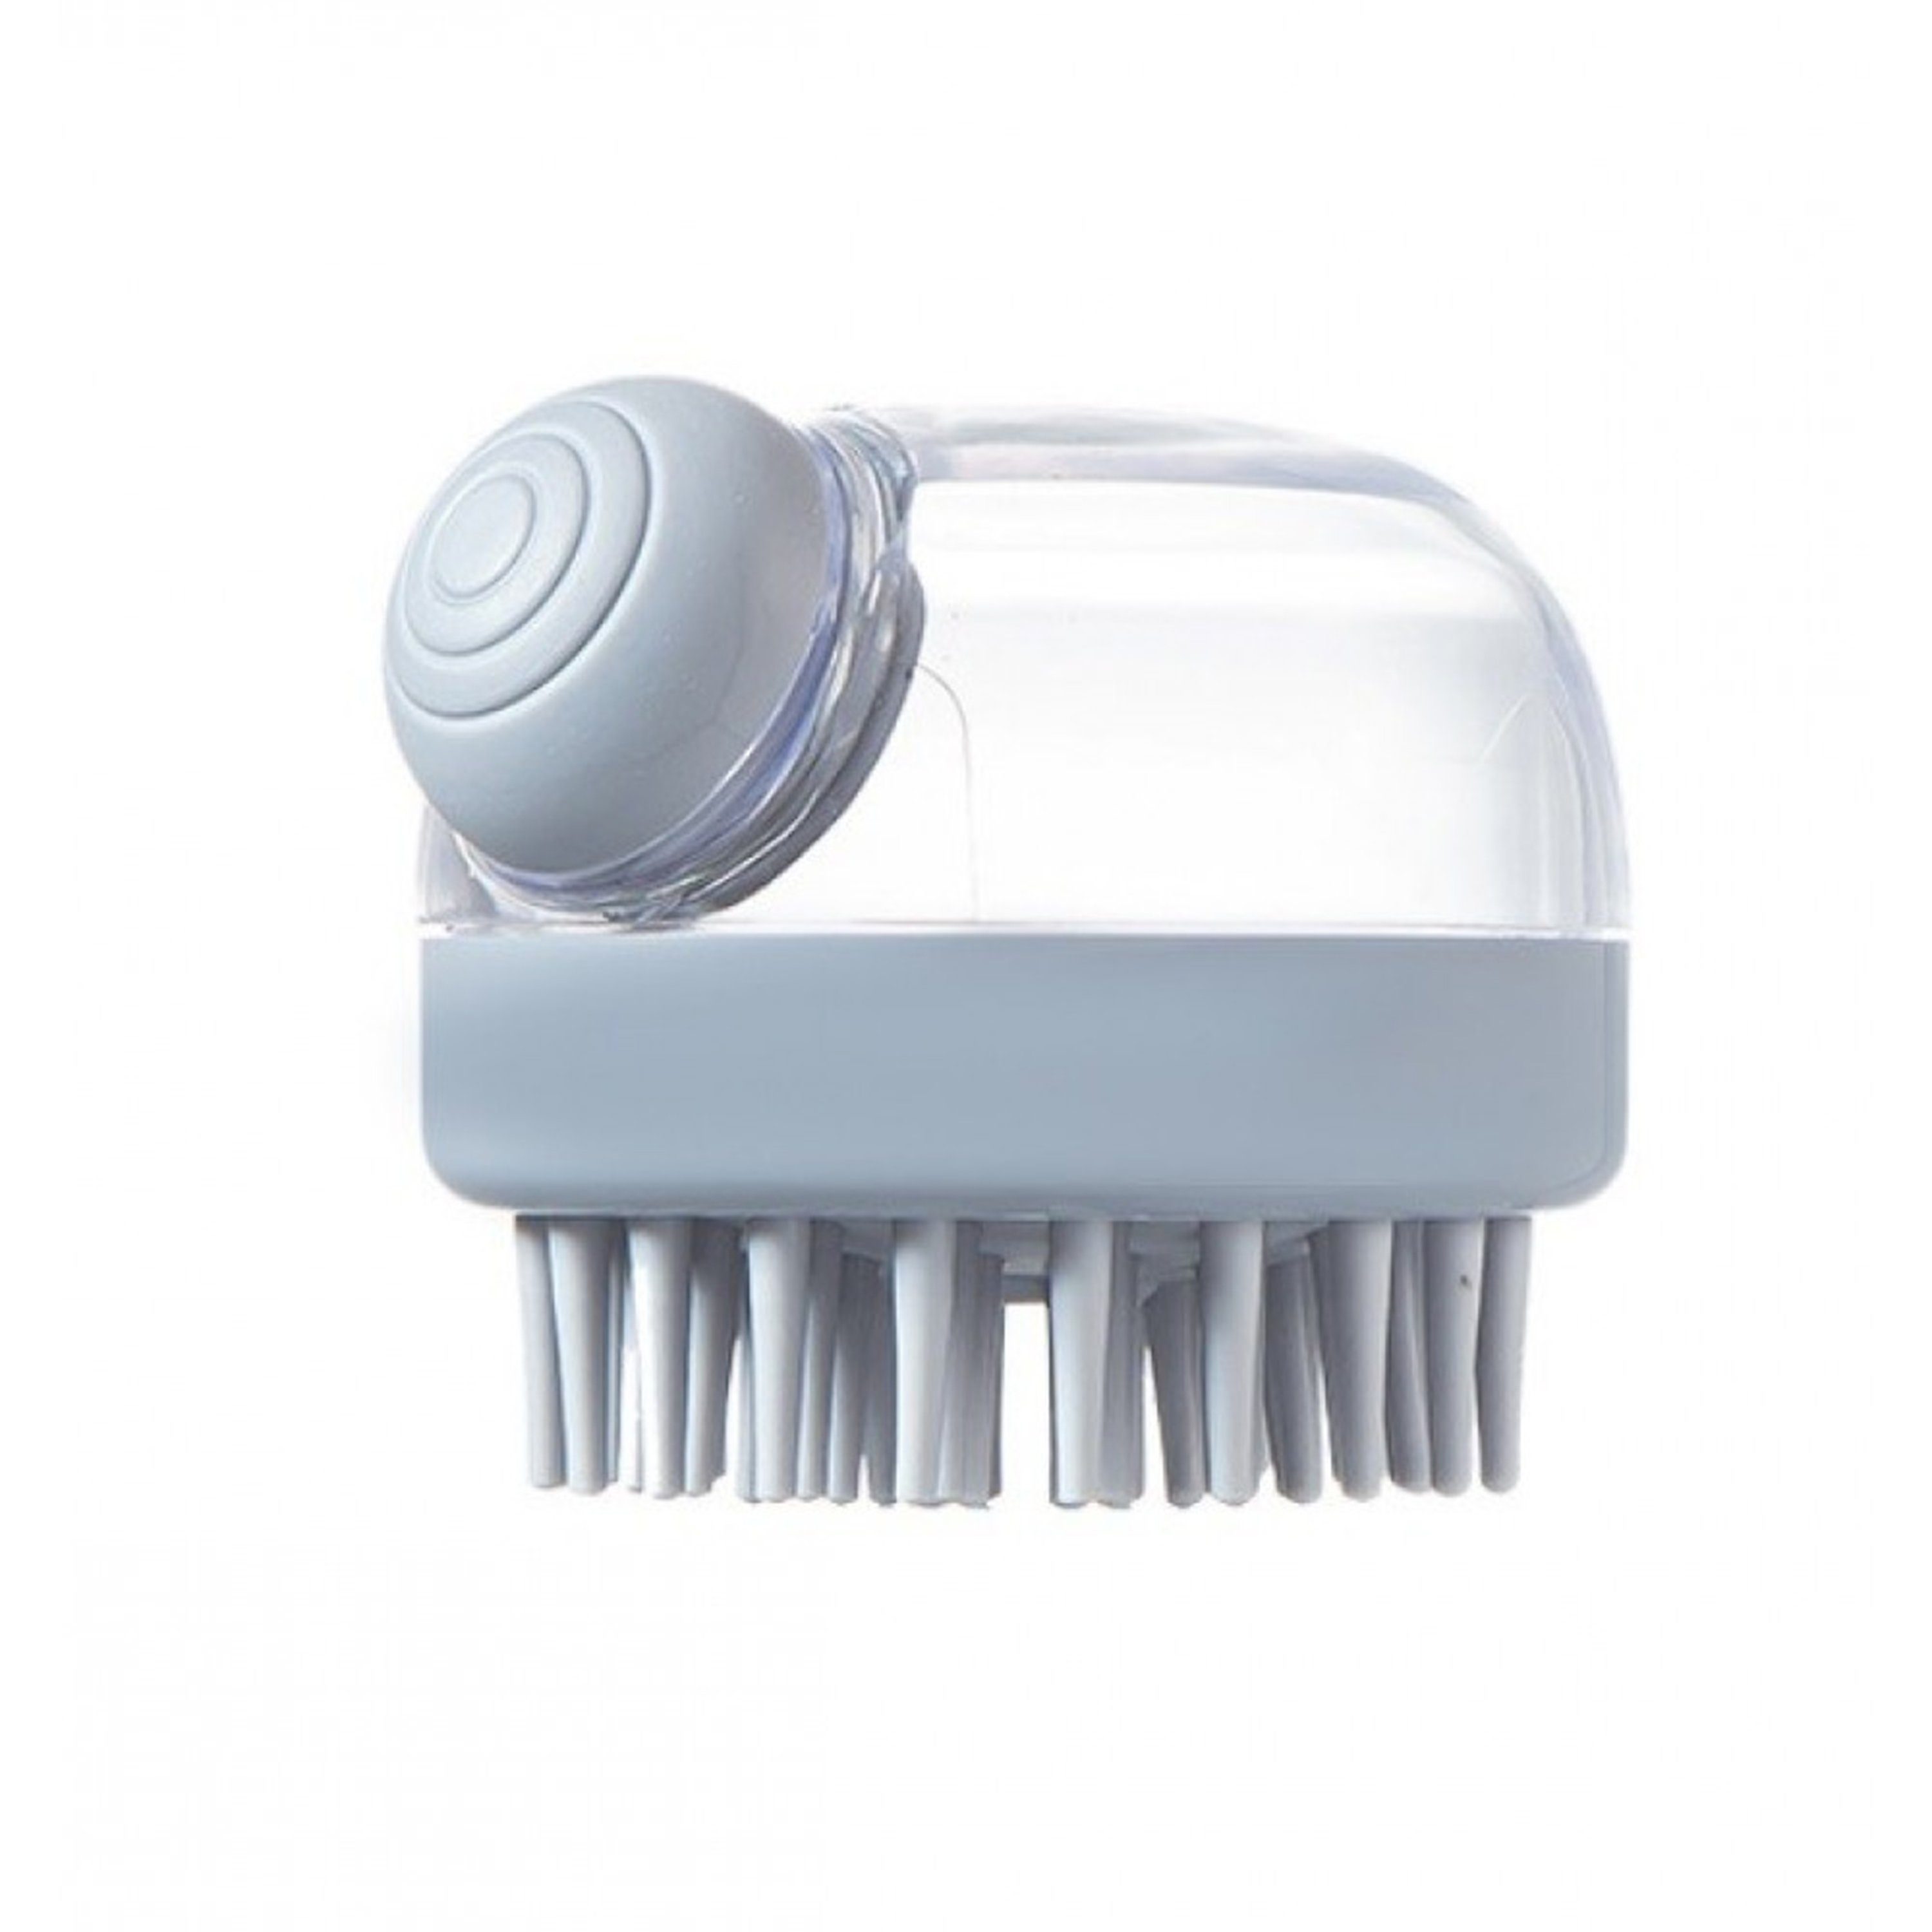 Friseurmeister Badebürste Kopfmassage Bürste - Silikon Kopfhaut Massagebürste Grau